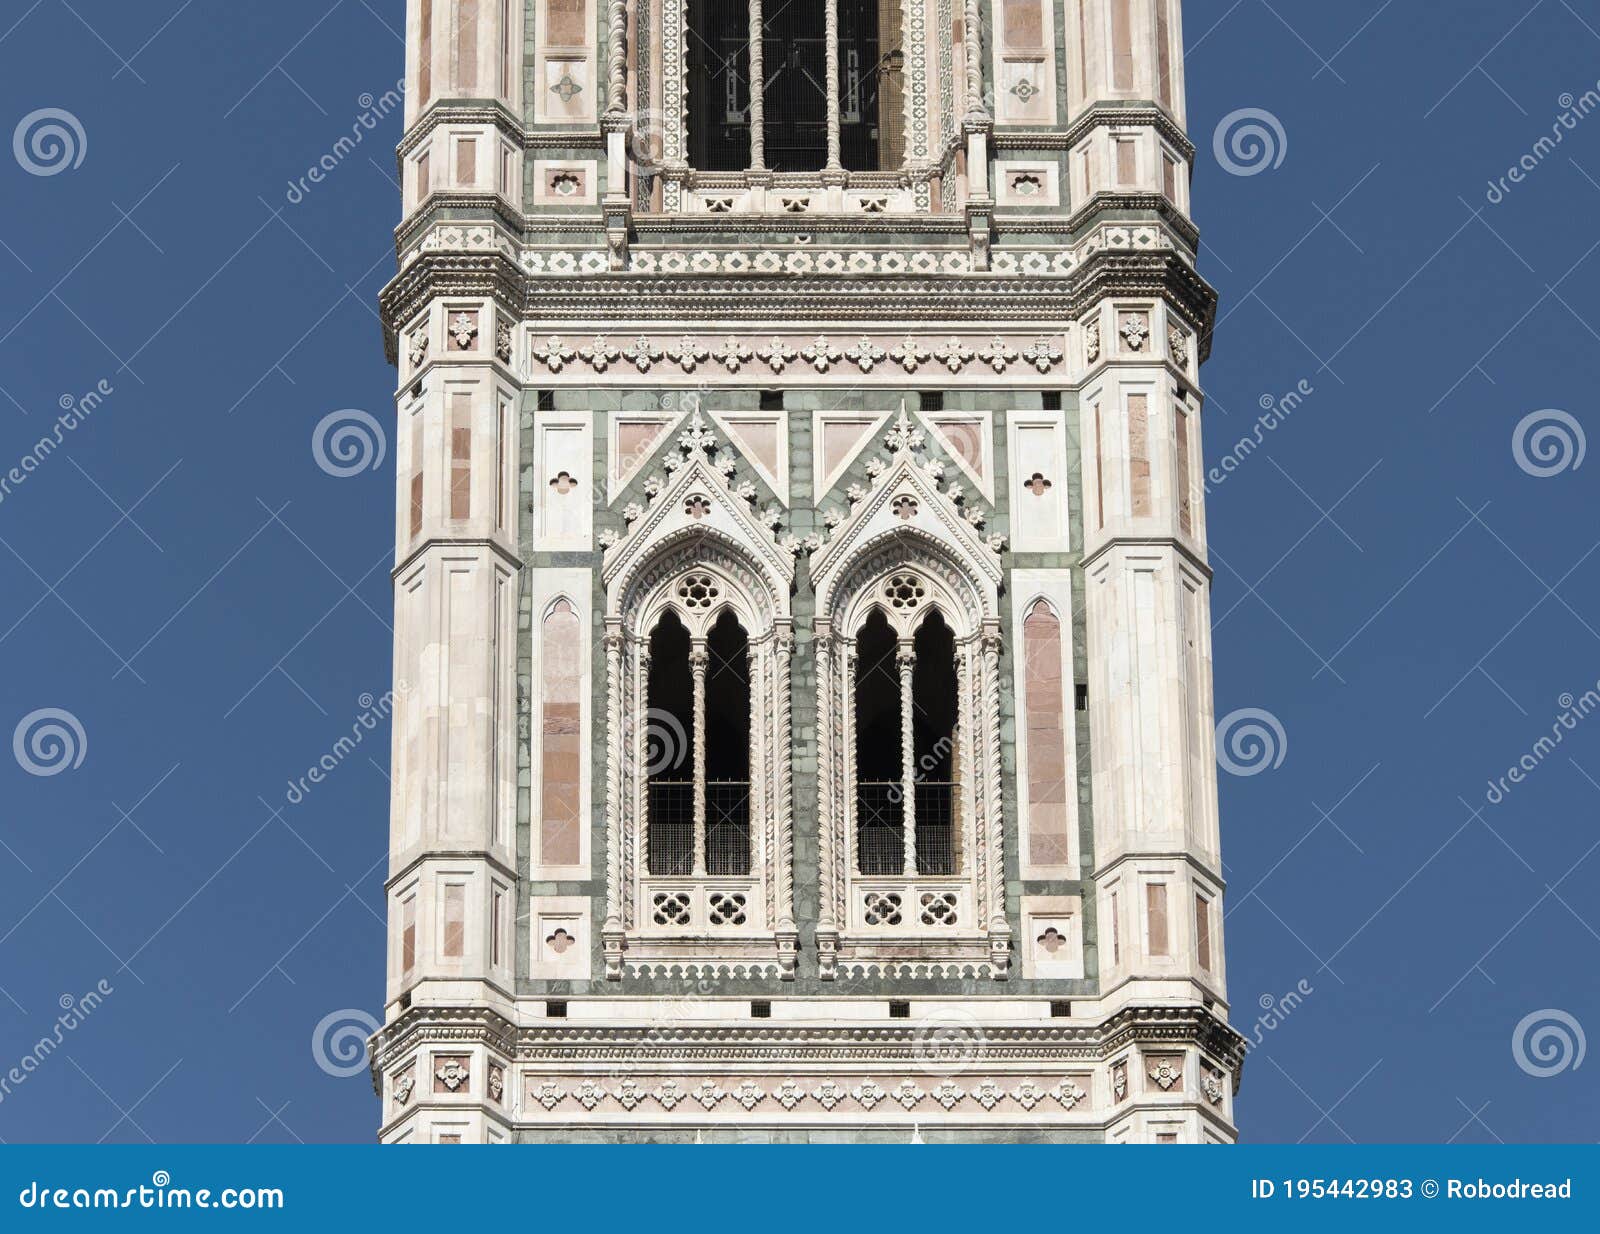 giotto`s bell tower of santa maria del fiore